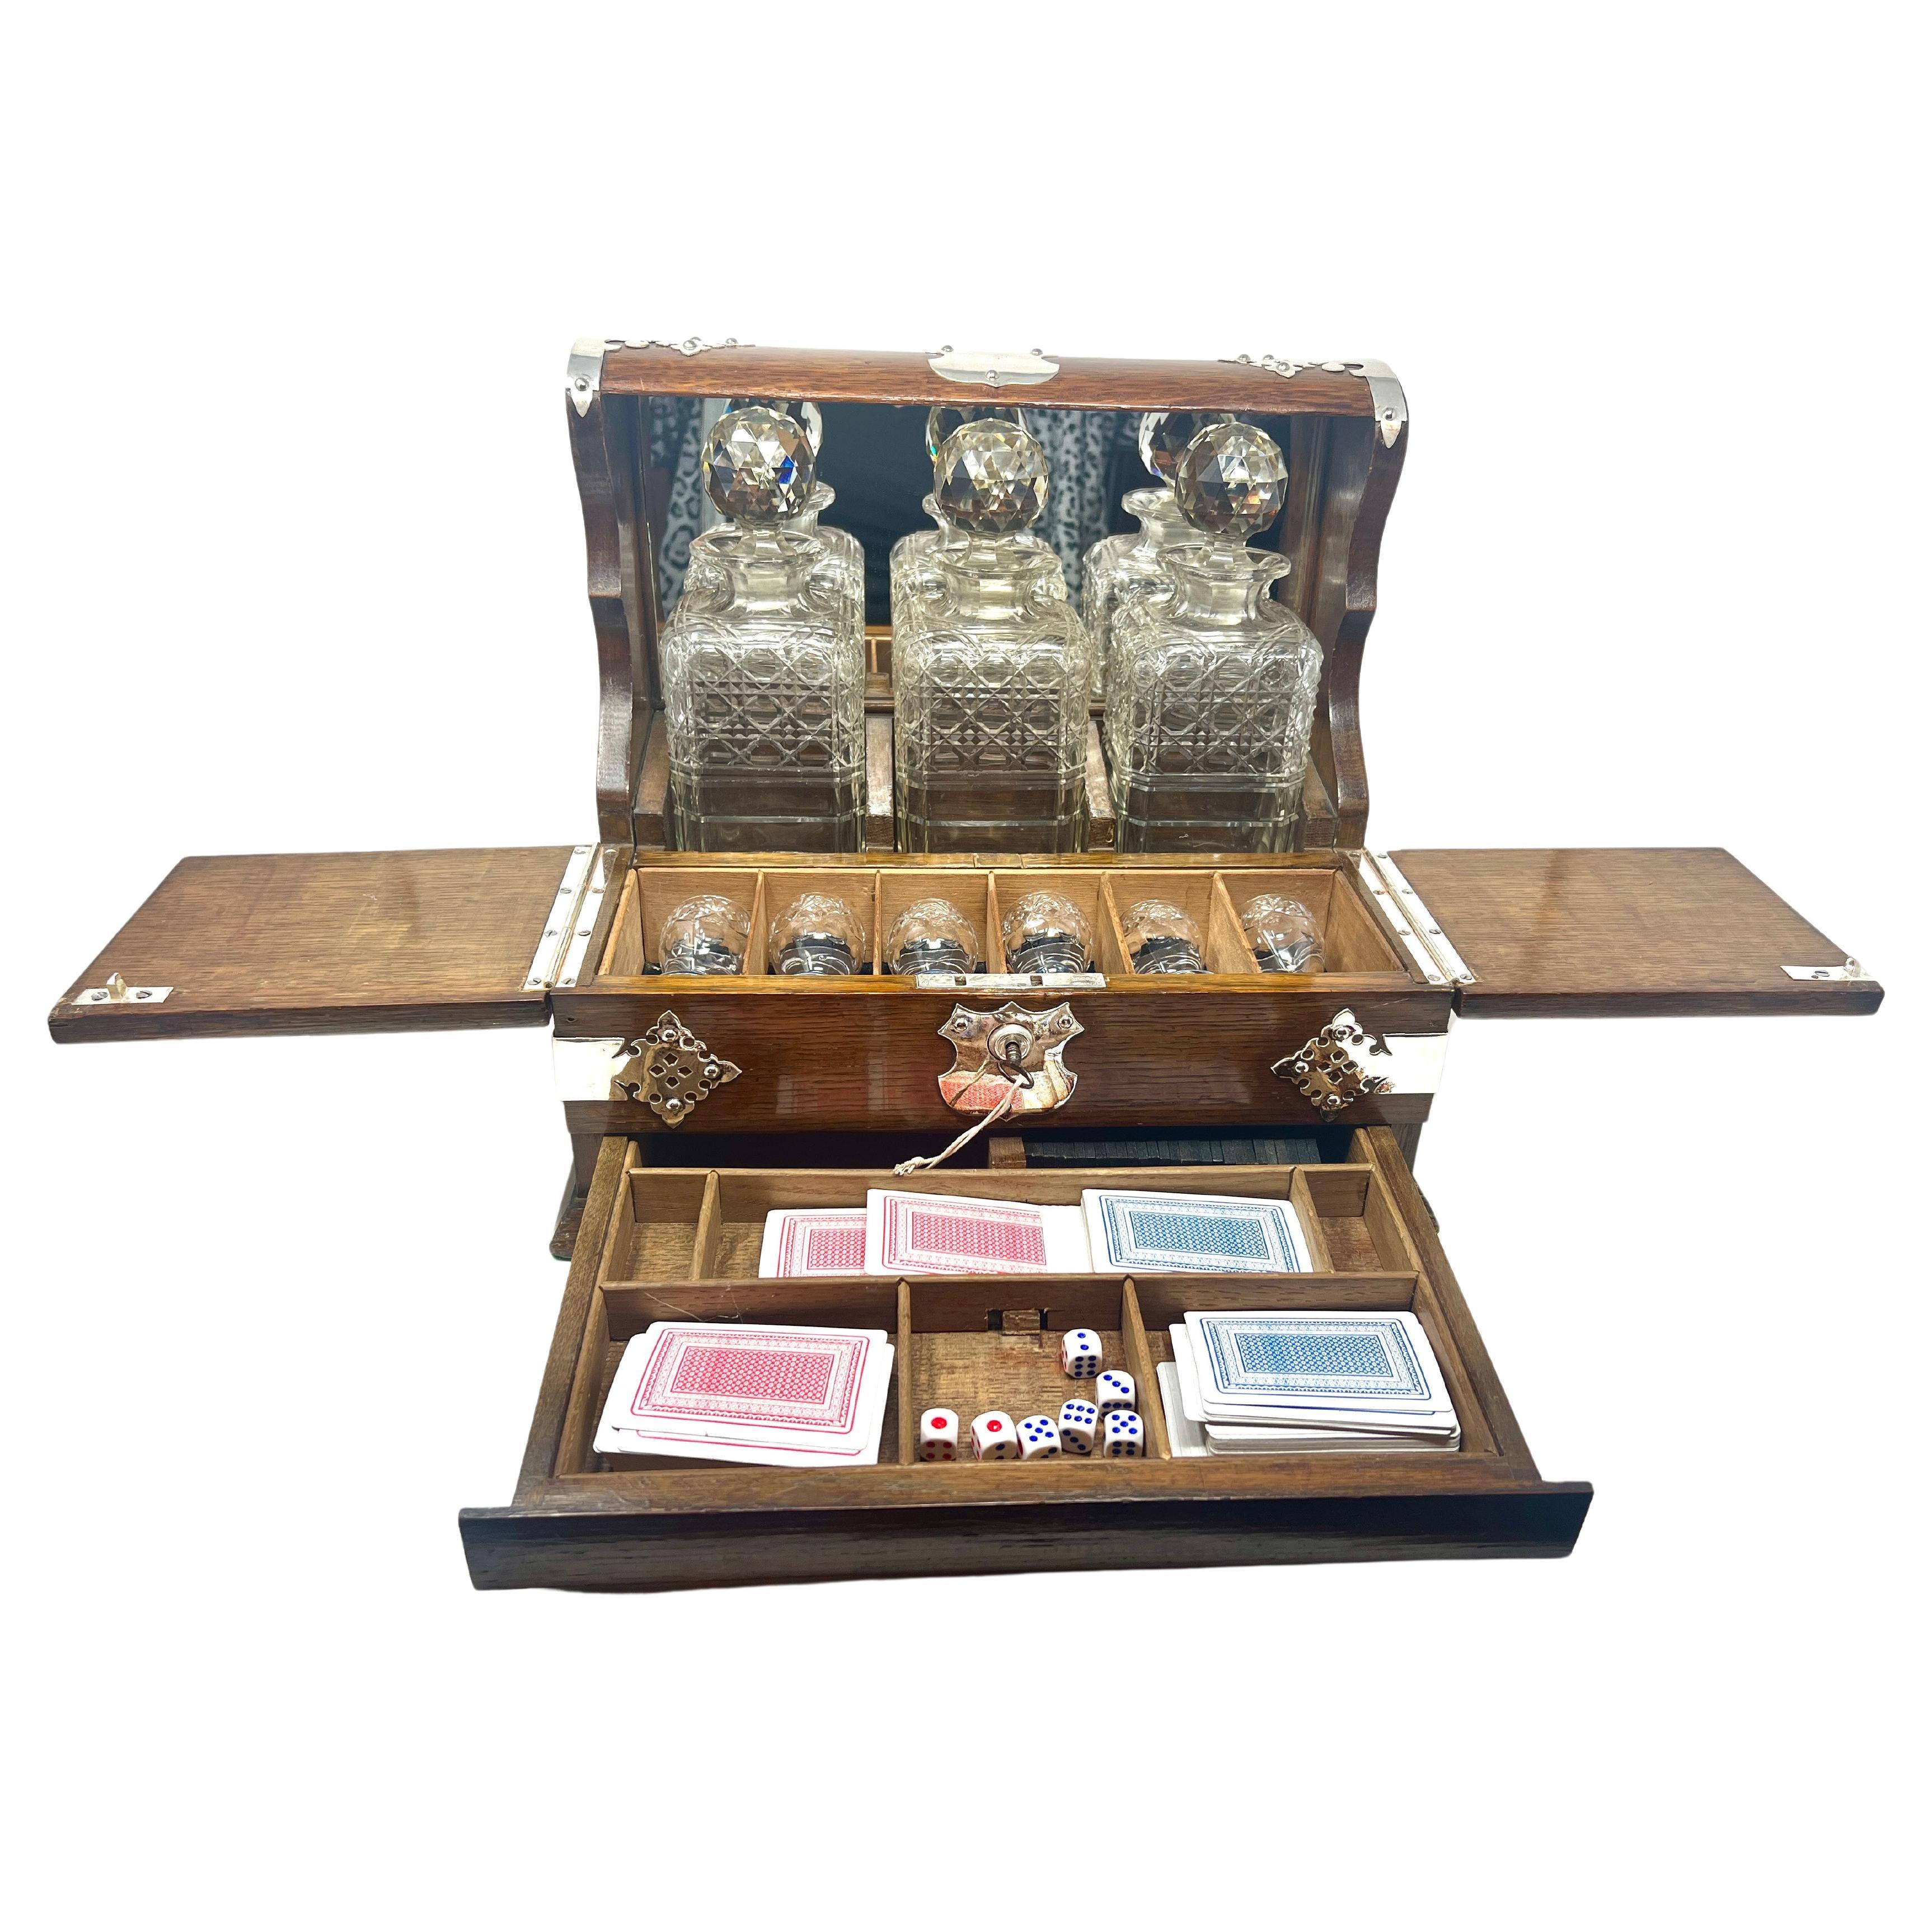 Ancienne boîte à jeux Tantale en chêne doré et cristal taillé, montée sur argent Sheffield, avec intérieur aménagé et dos en miroir, vers 1890.
L'intérieur aménagé comprend 3 carafes en cristal, 6 cordiers en cristal, des cartes à jouer et des dés.